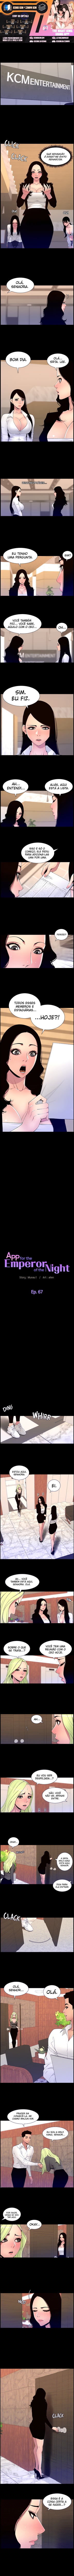 The Night King Using App 67 página 1